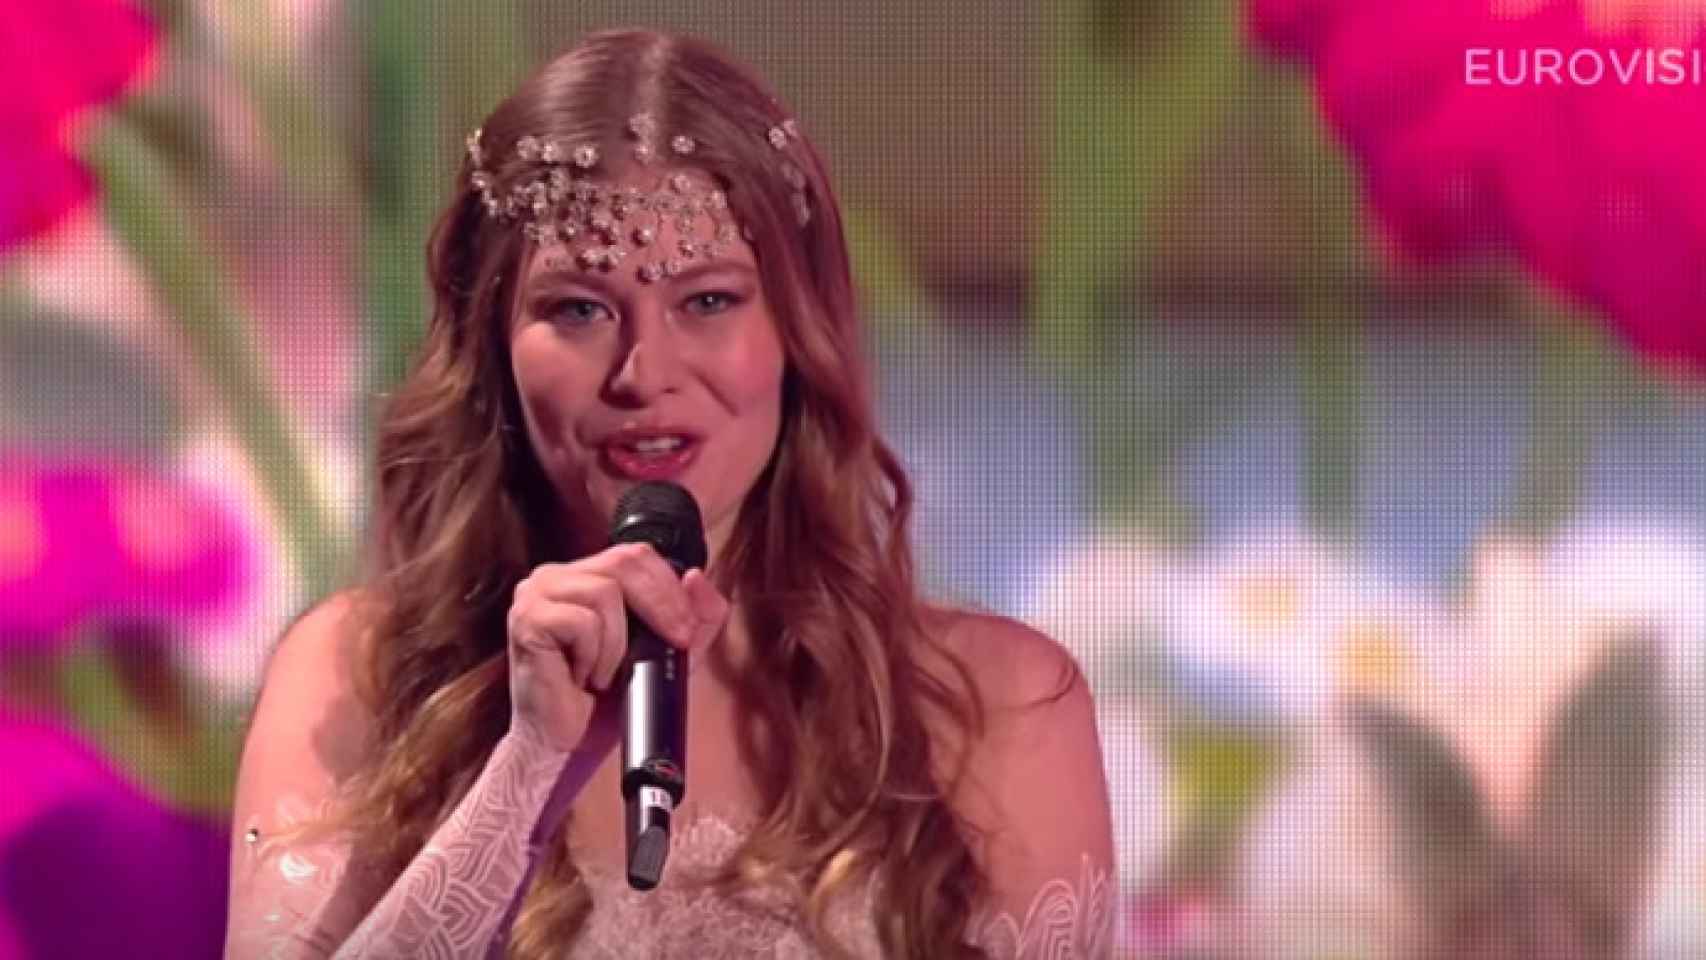 Zoë, representante de Austria en Eurovisión 2016